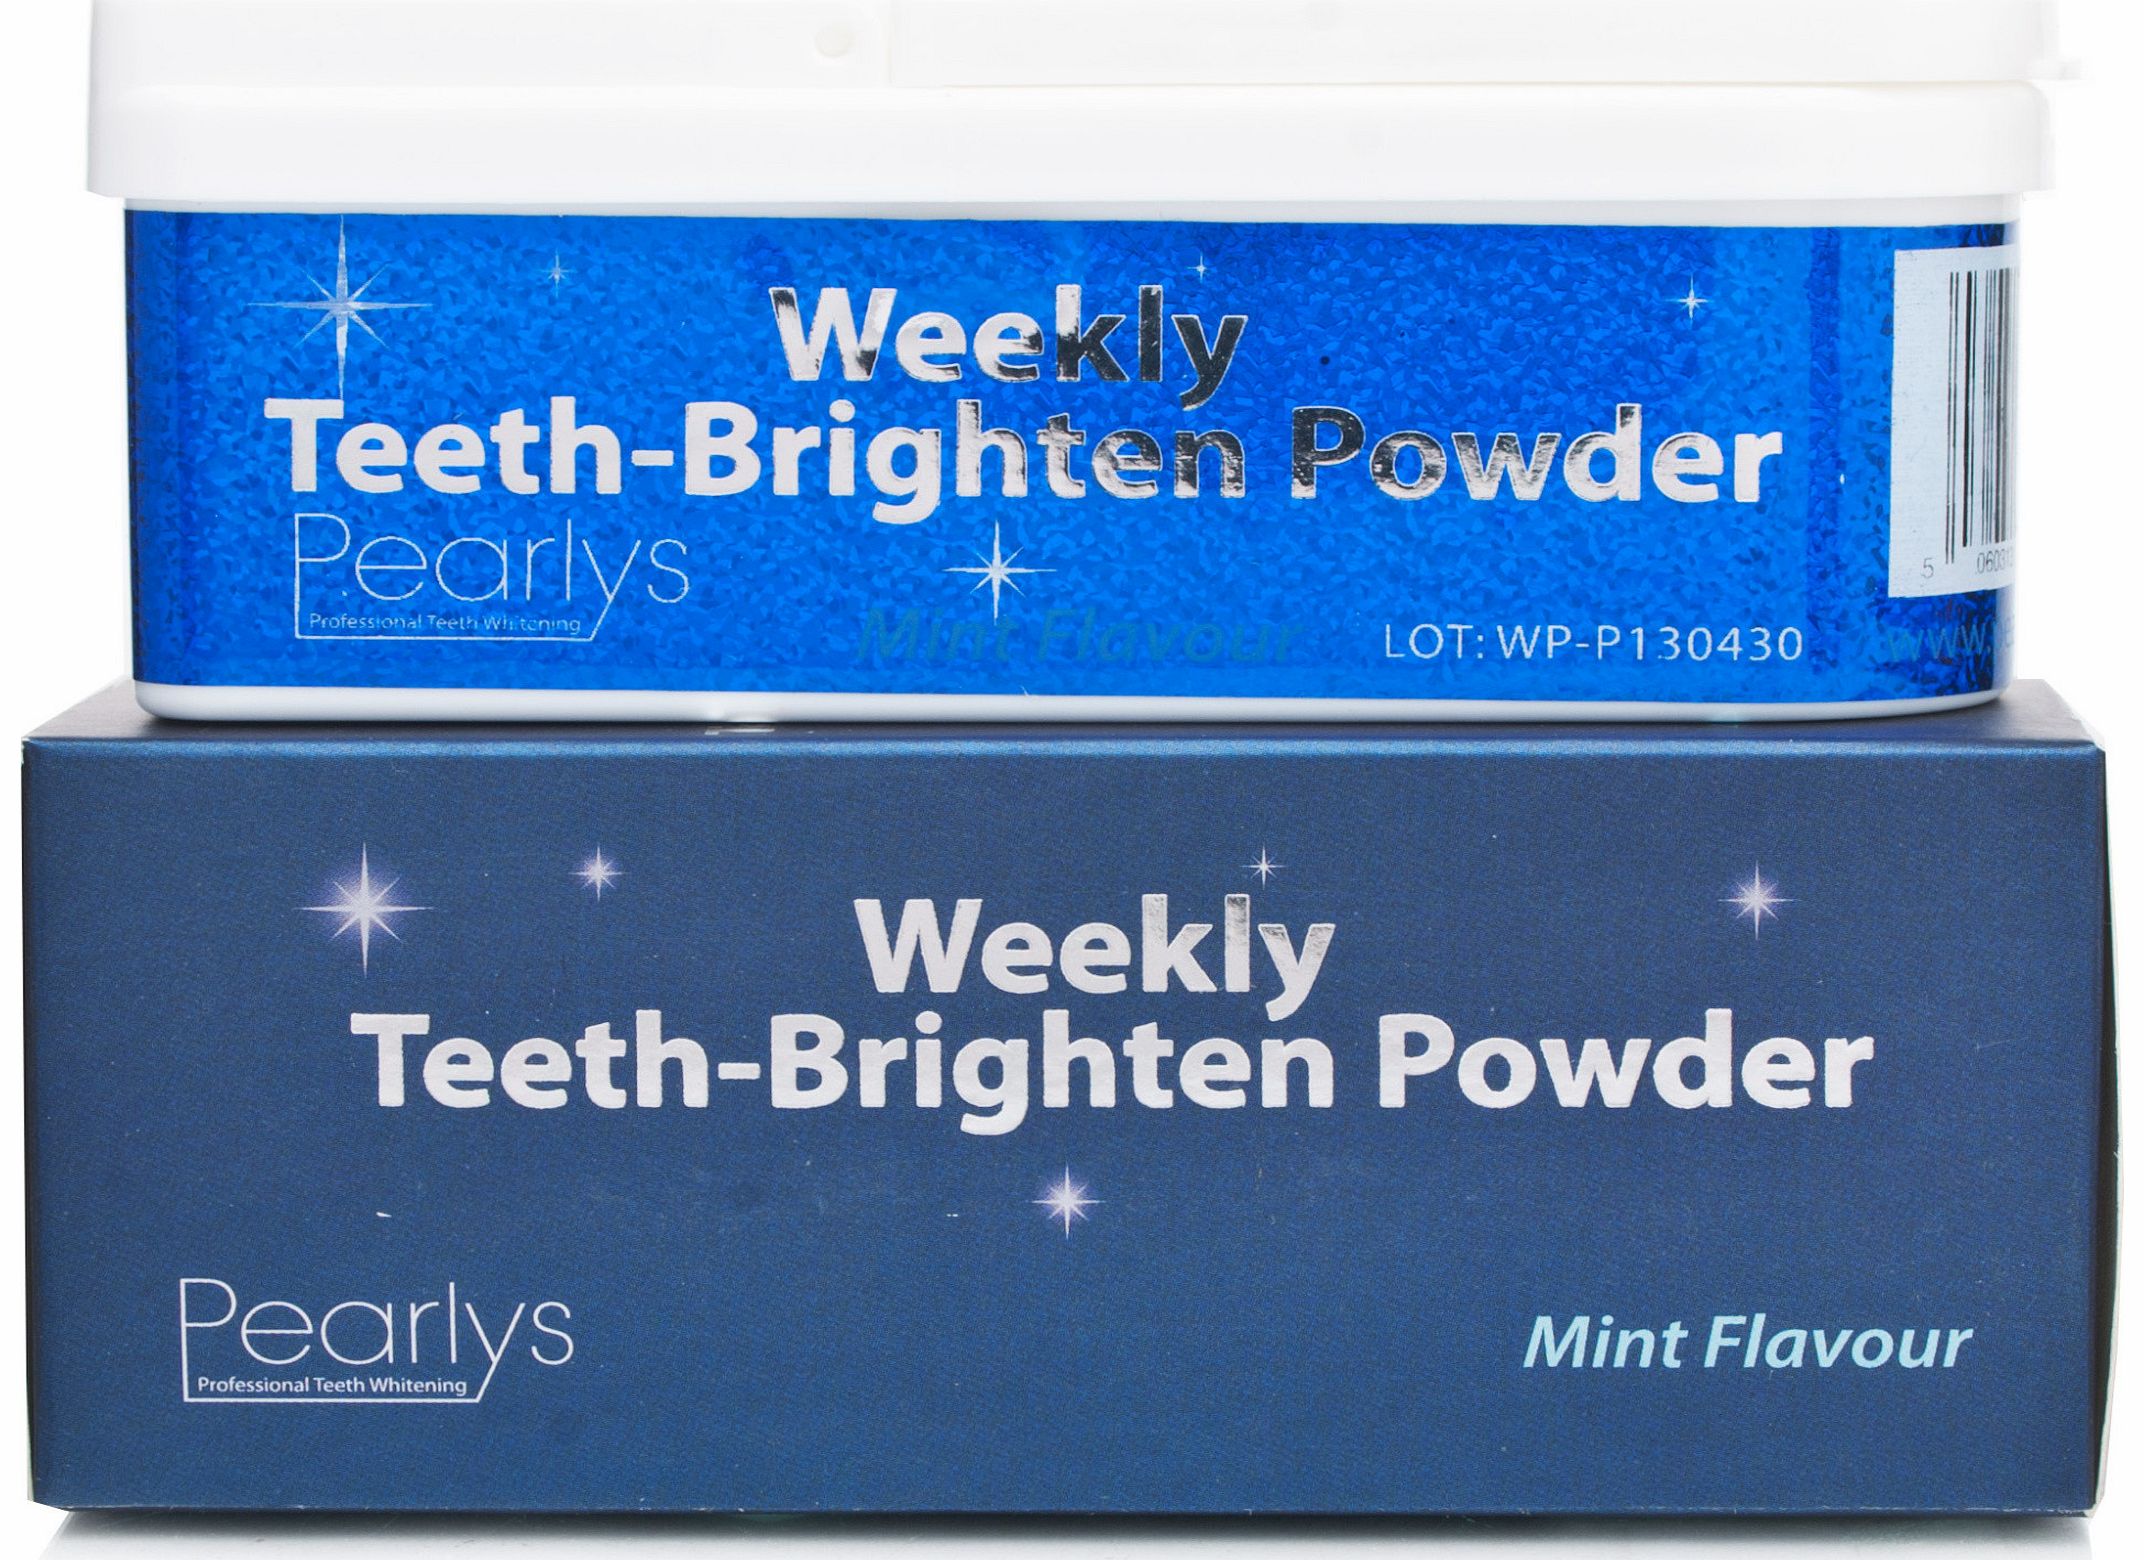 Weekly Teeth Brightening Powder